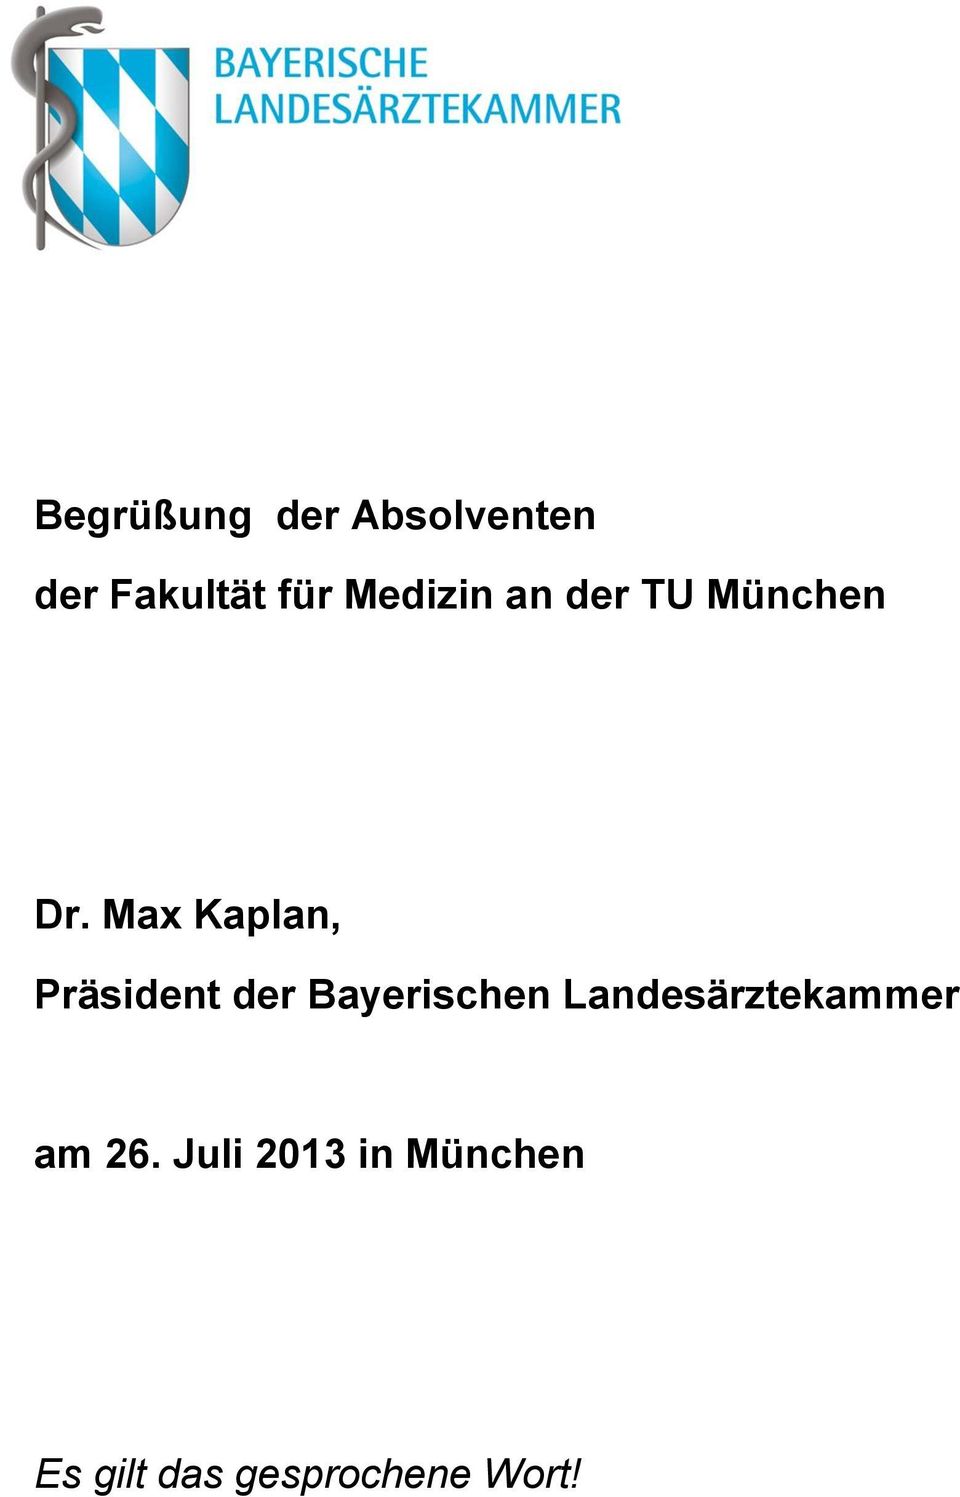 Max Kaplan, Präsident der Bayerischen